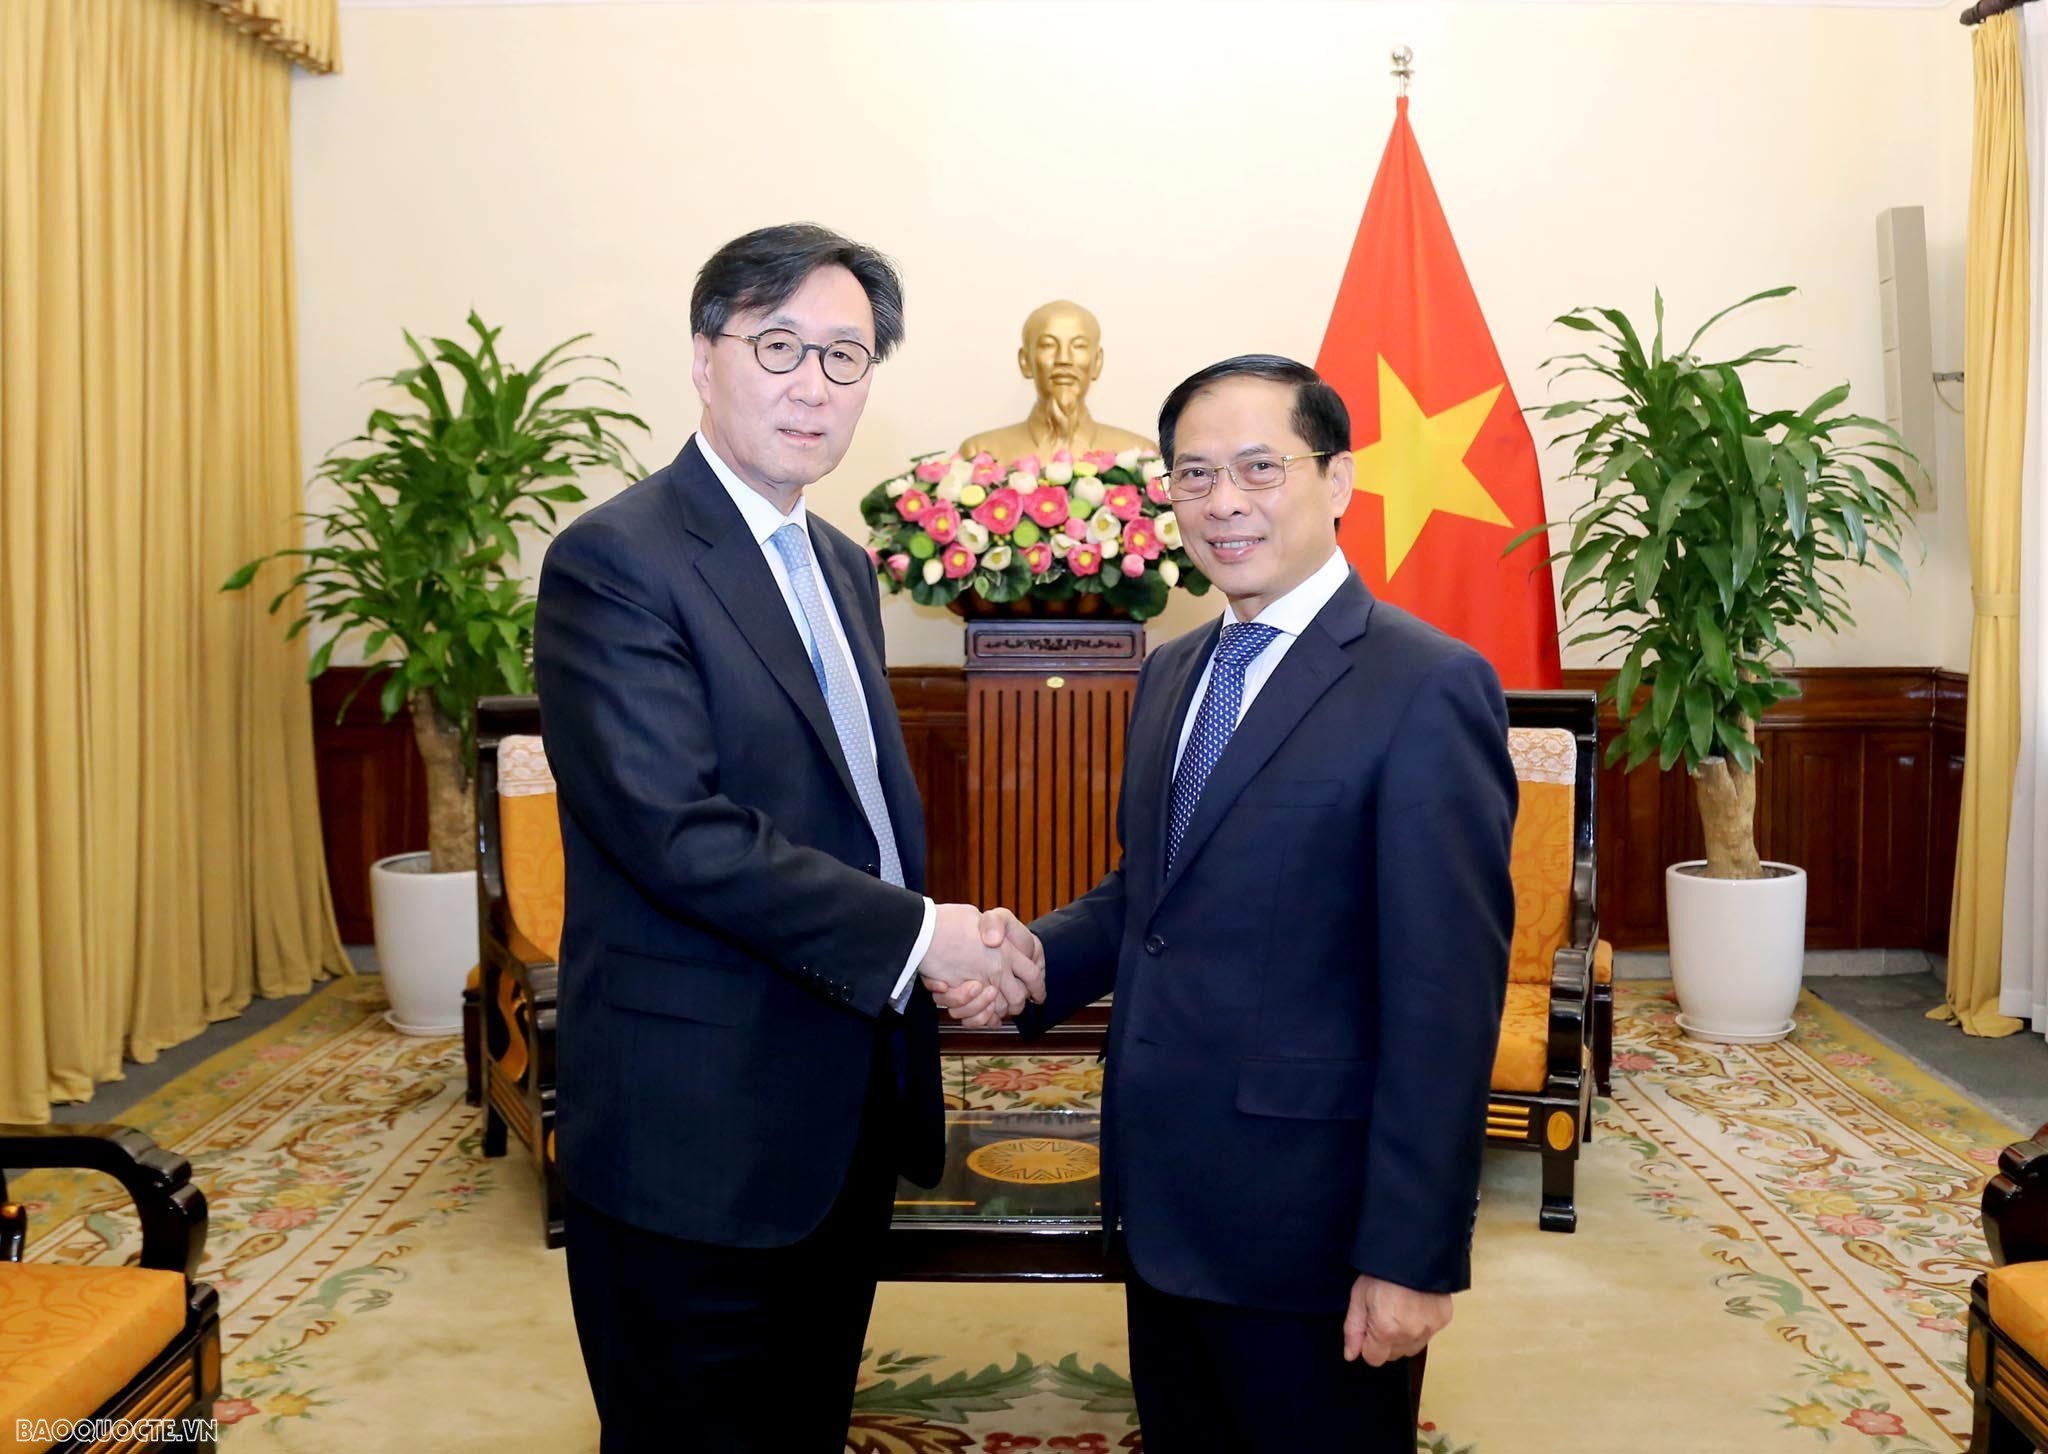 Bộ trưởng Ngoại giao Bùi Thanh Sơn đã tiếp Thứ trưởng Thứ  nhất Bộ Ngoại giao Hàn Quốc Chang Ho Jin chào xã giao.